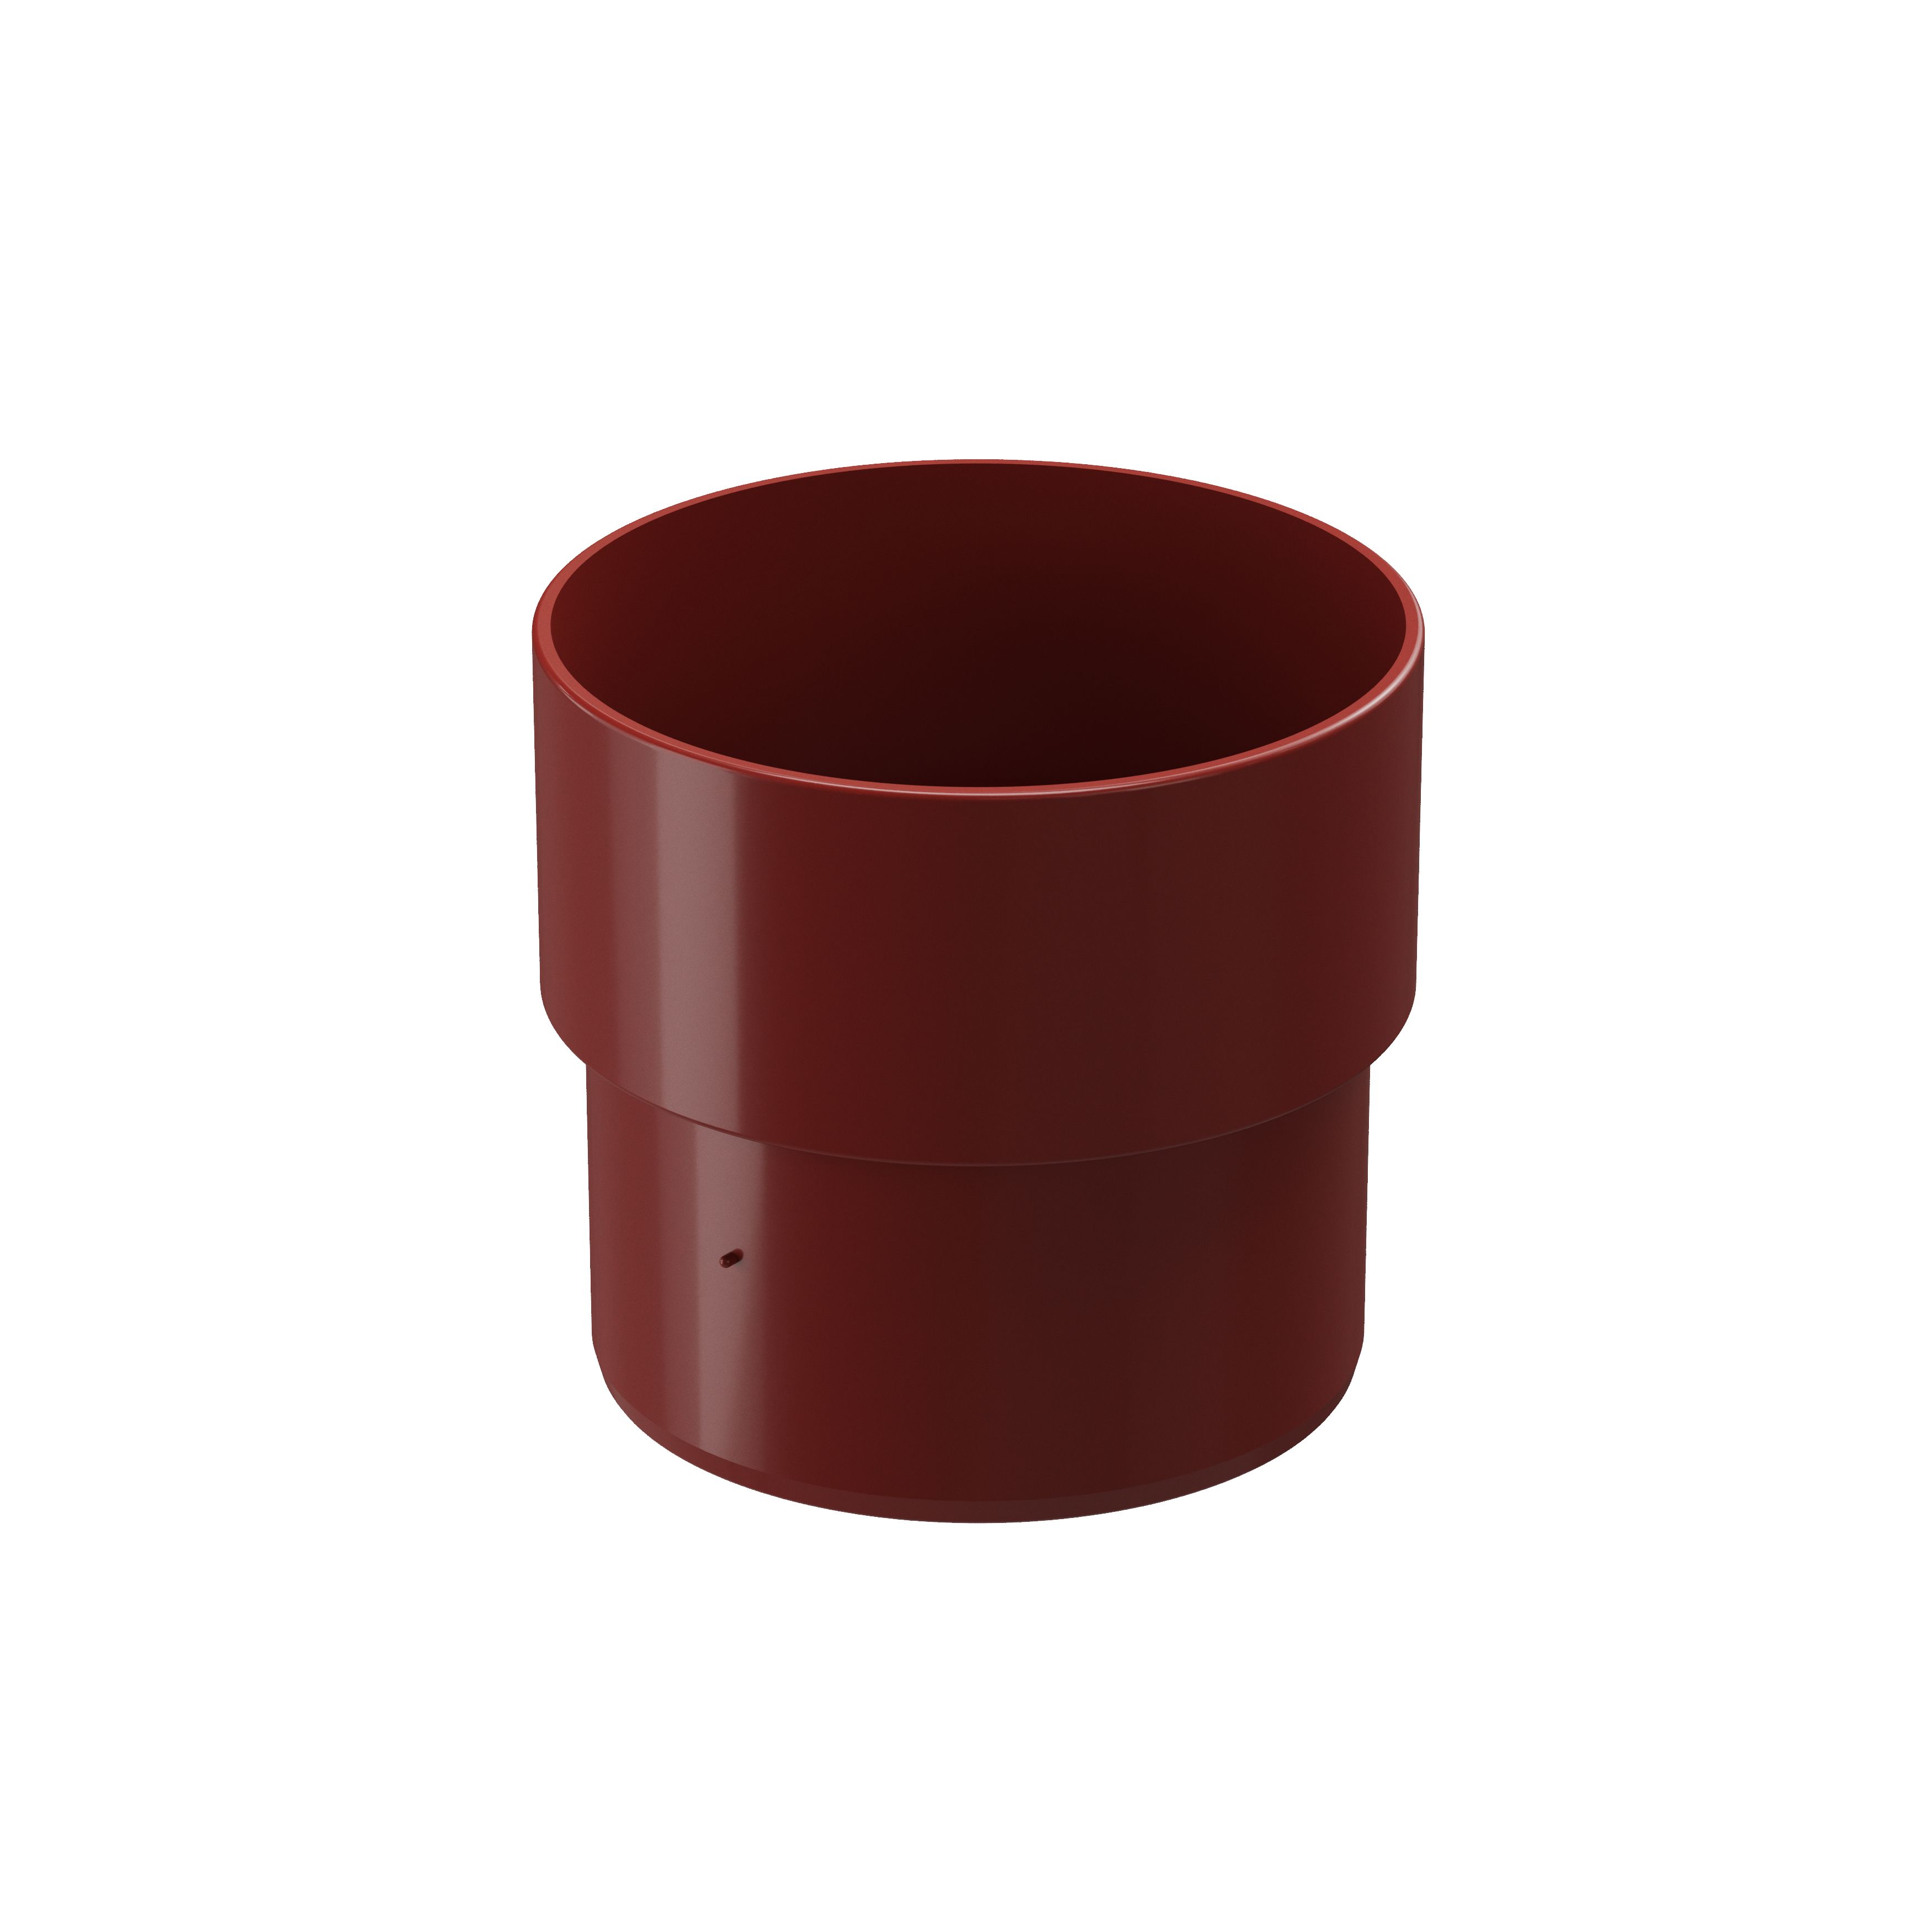 Соединитель (муфта) трубы пластиковый Docke Standart, Соединитель (муфта) водосточной трубы универсальный ПВХ красный 3005